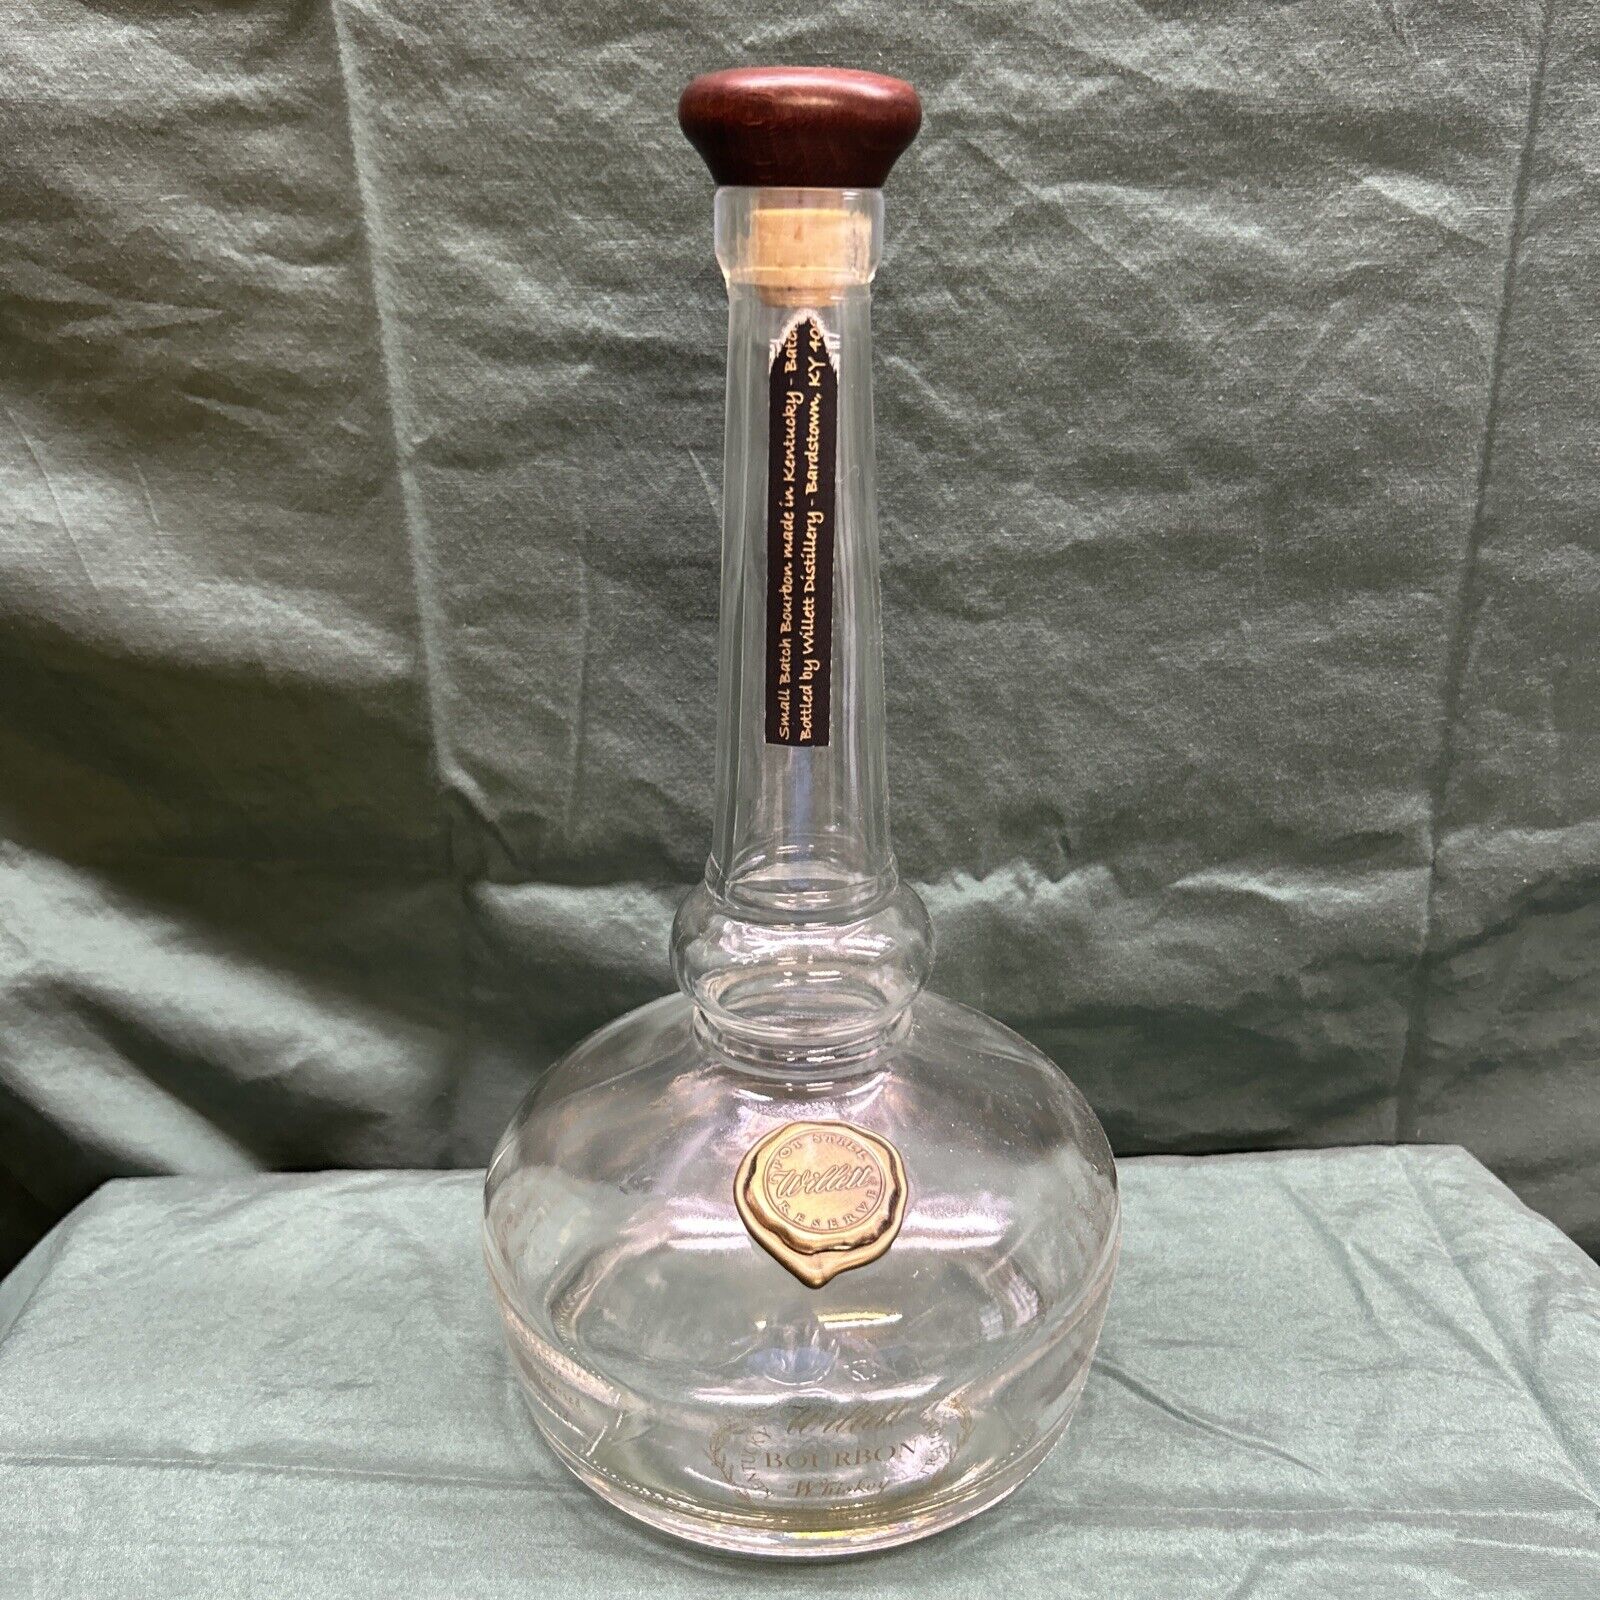 Willett Bourbon Empty Bottle Pot Still Reserve 1.75 Lt Kentucky Straight Whiskey